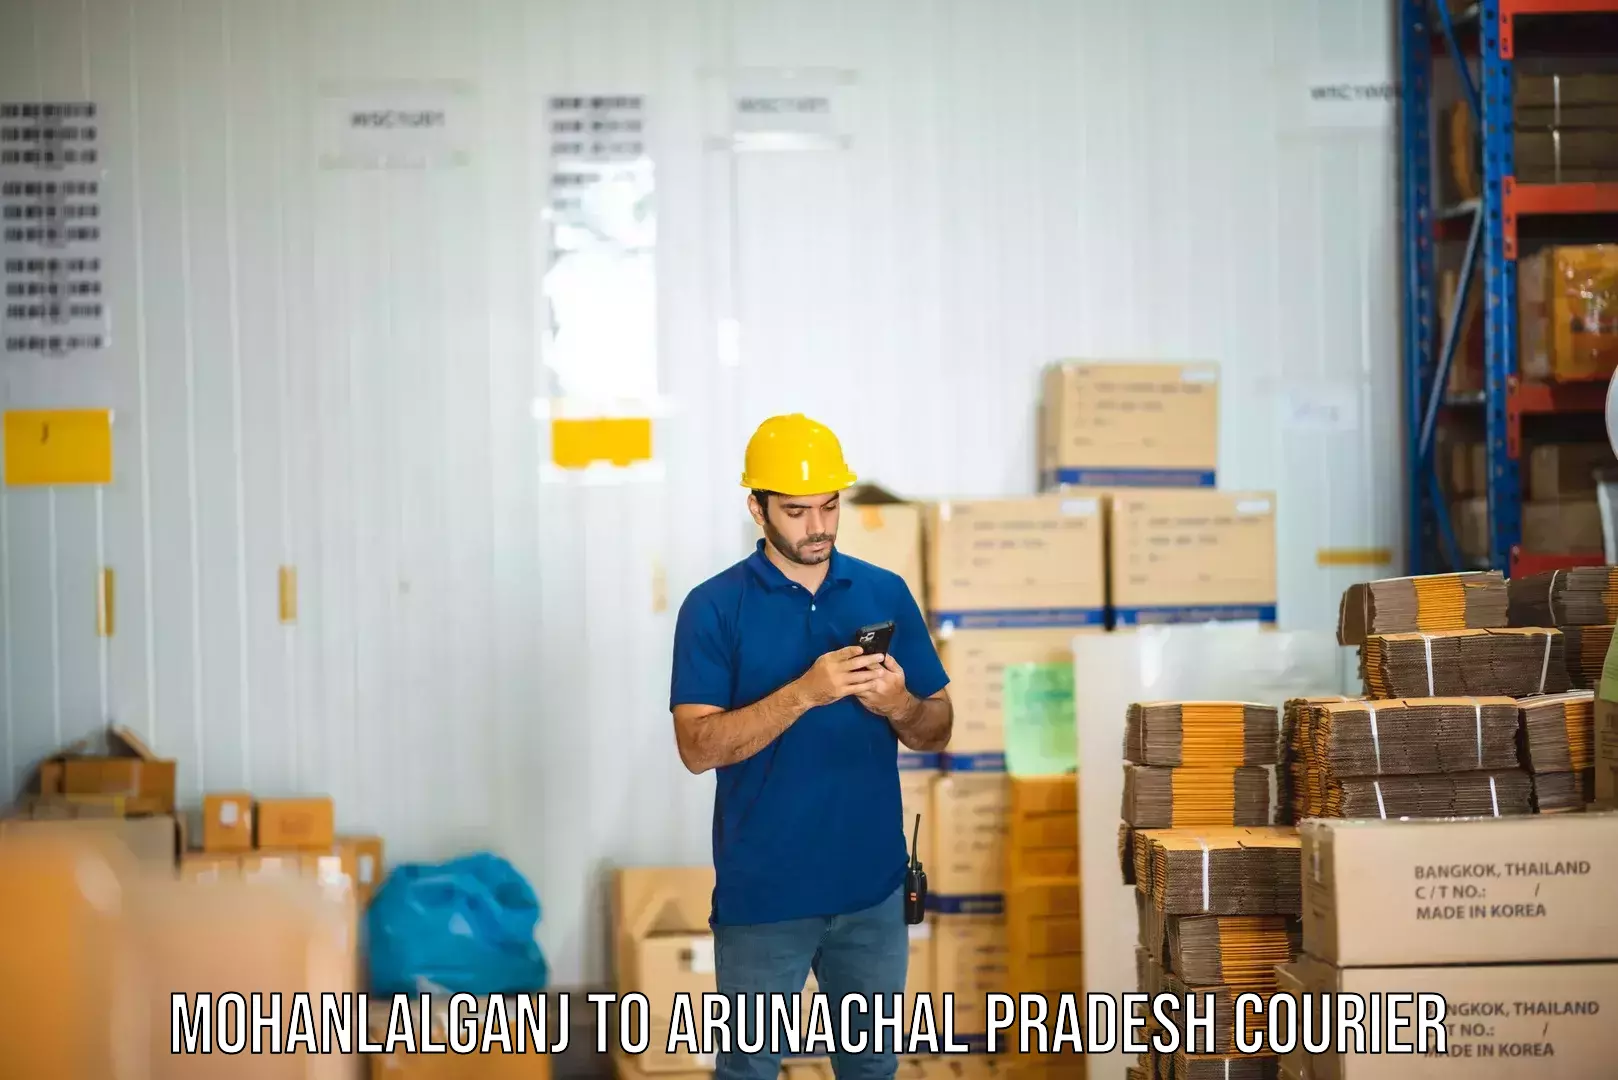 Customizable shipping options Mohanlalganj to Arunachal Pradesh